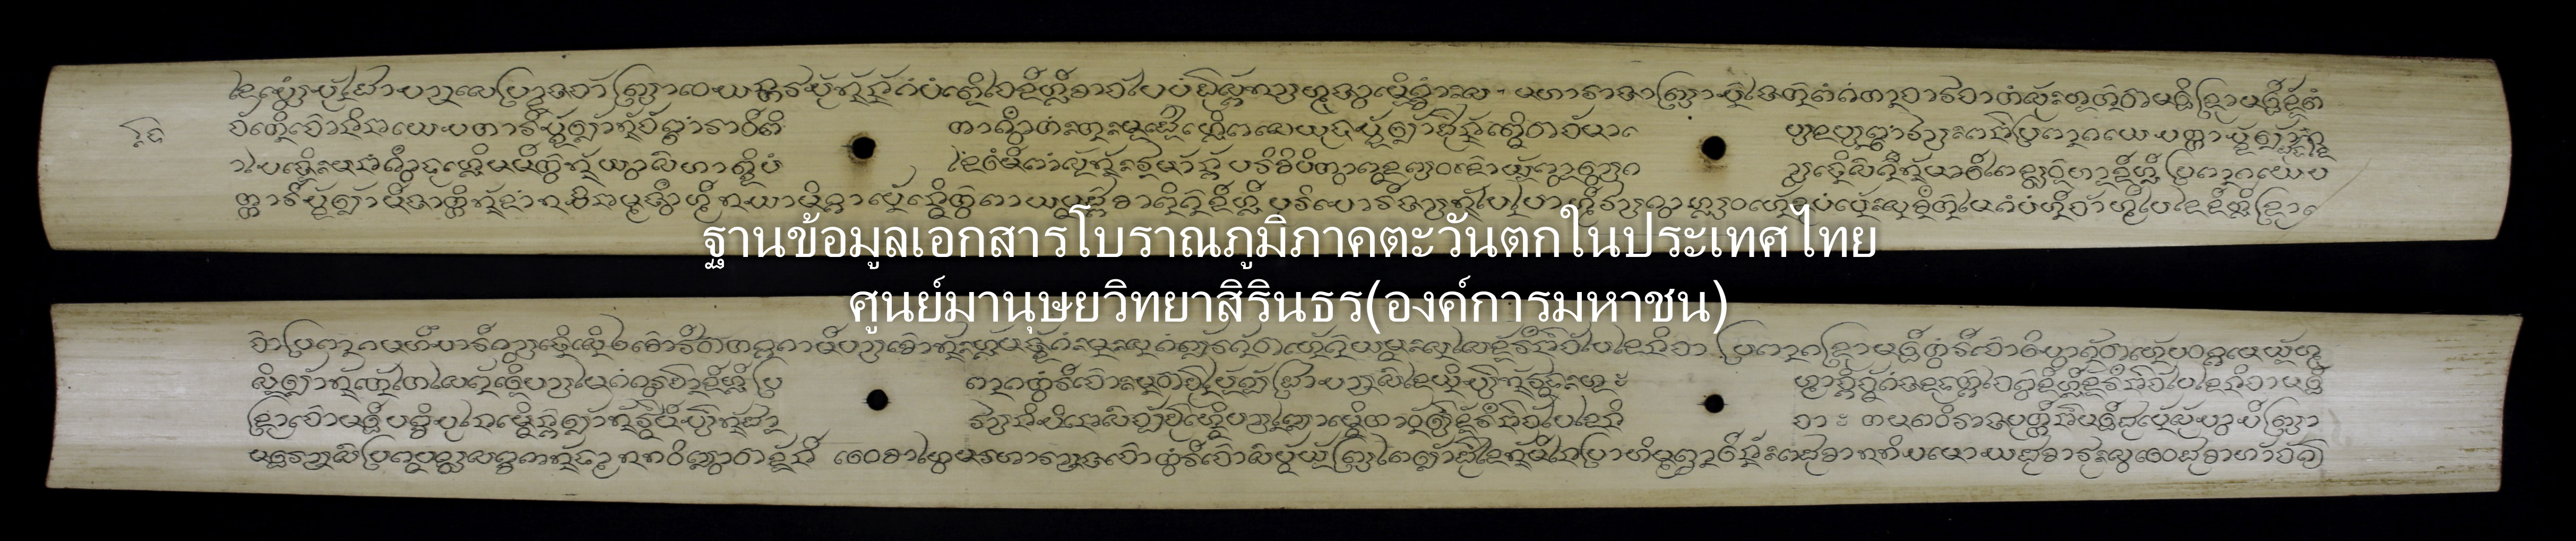 RBR004-194-ThanKhan3-001-015.JPG-